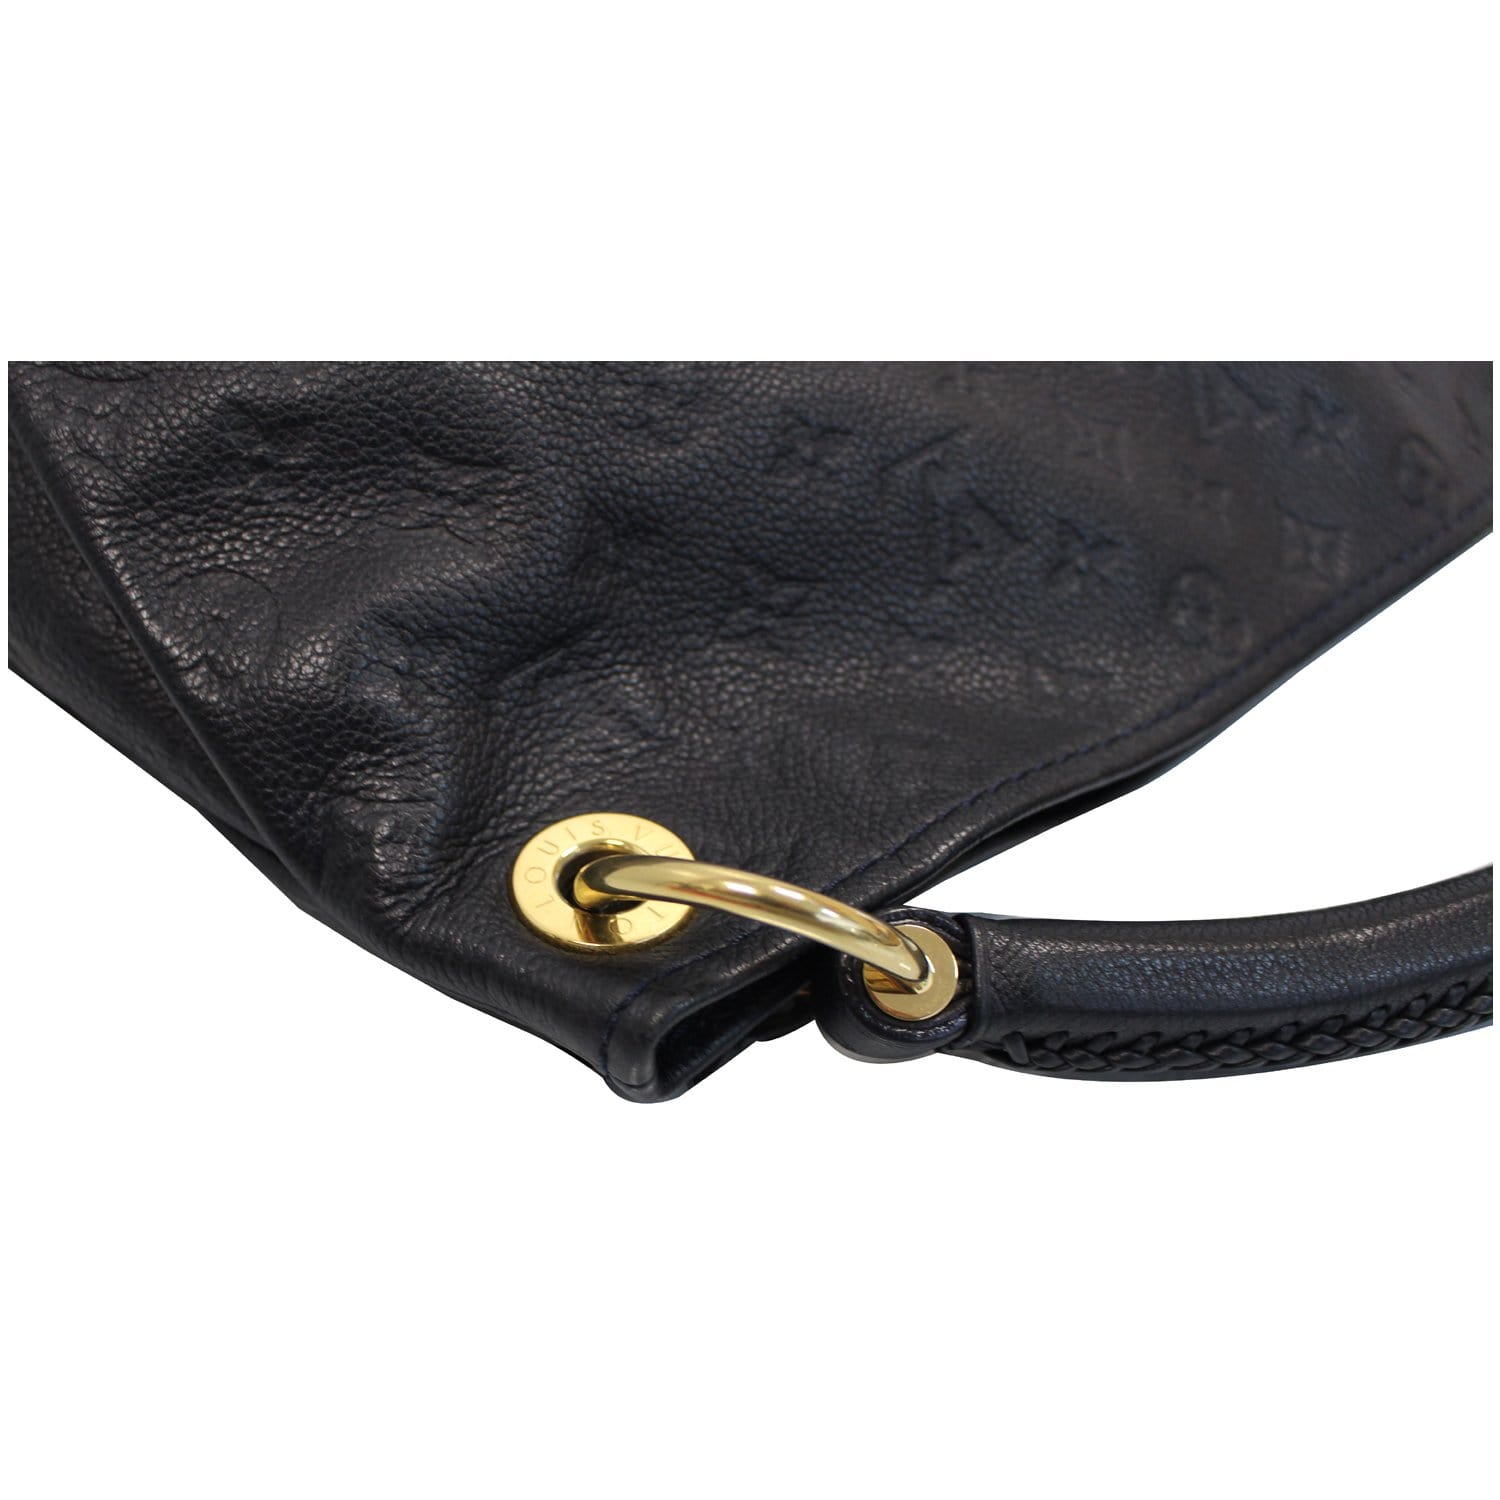 Louis Vuitton, Bags, Loius Vuitton Artsy Mm Monogram Empreinte Leather